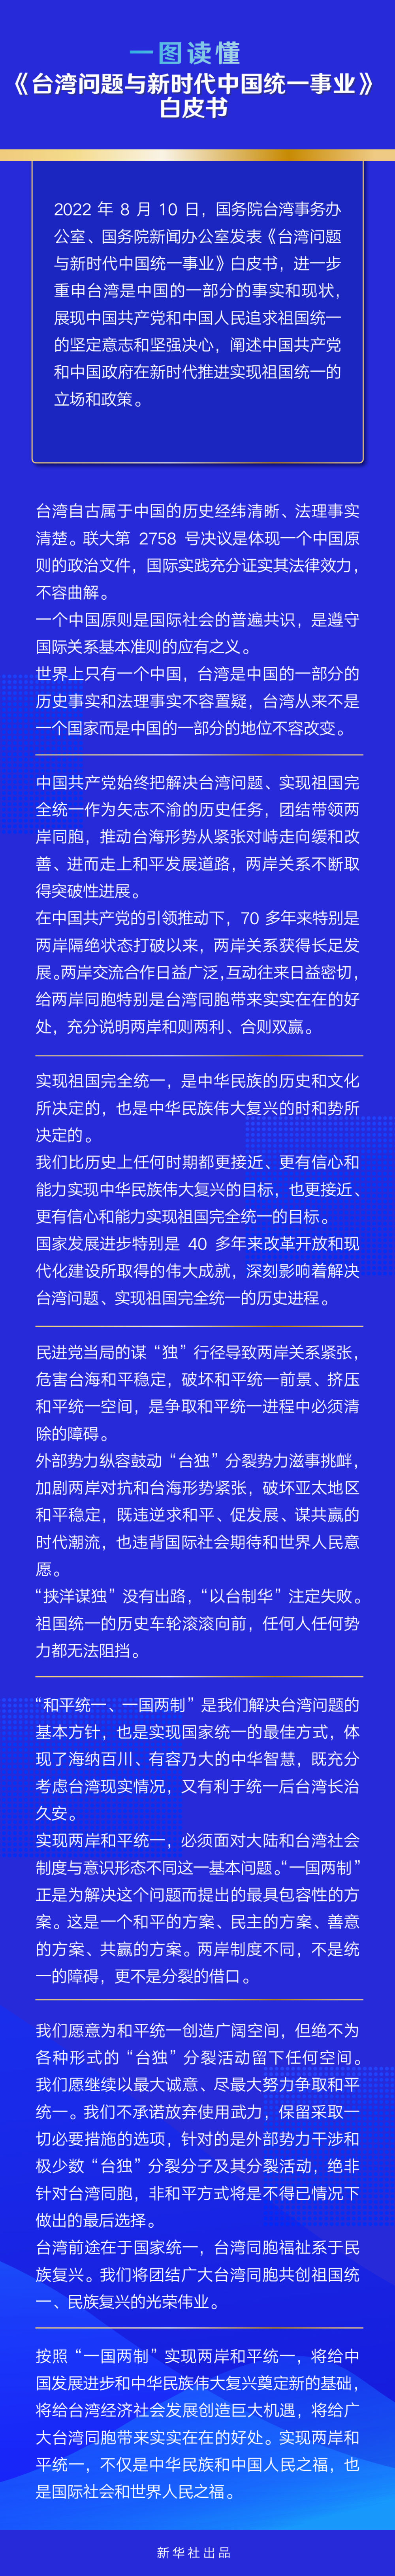 一图读懂丨《台湾问题与新时代中国统一事业》白皮书